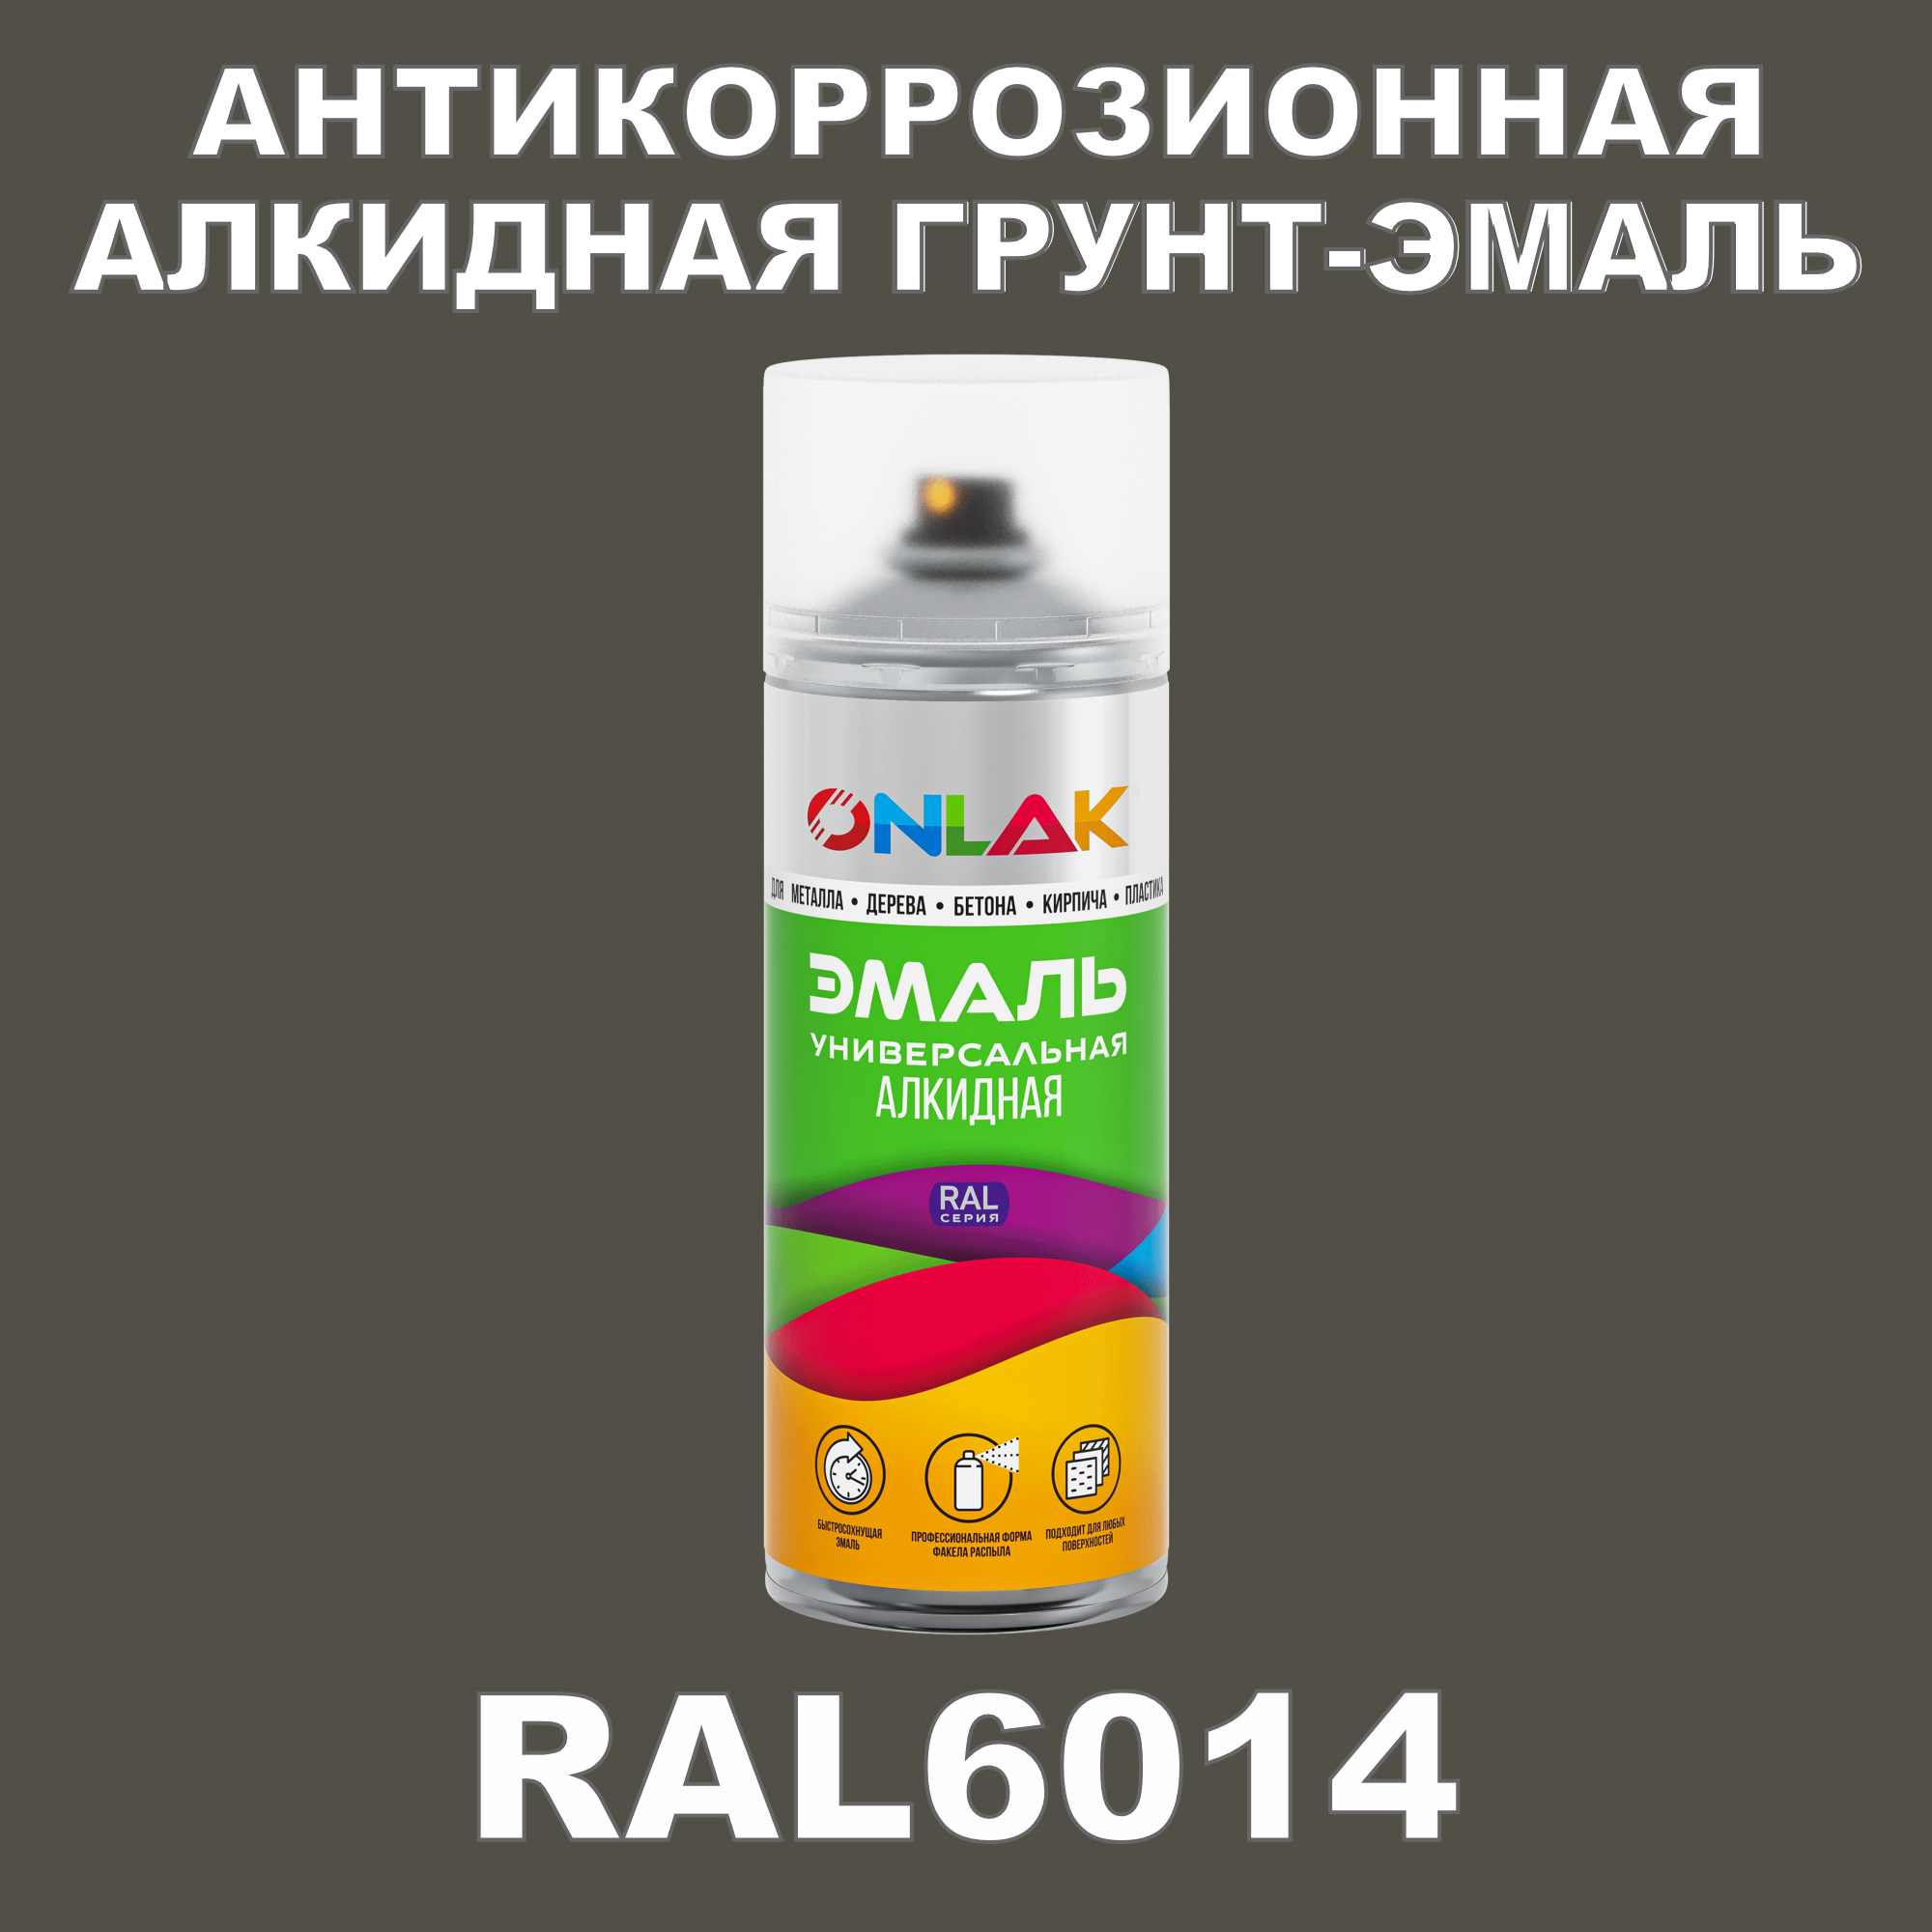 Антикоррозионная грунт-эмаль ONLAK RAL6014 полуматовая для металла и защиты от ржавчины